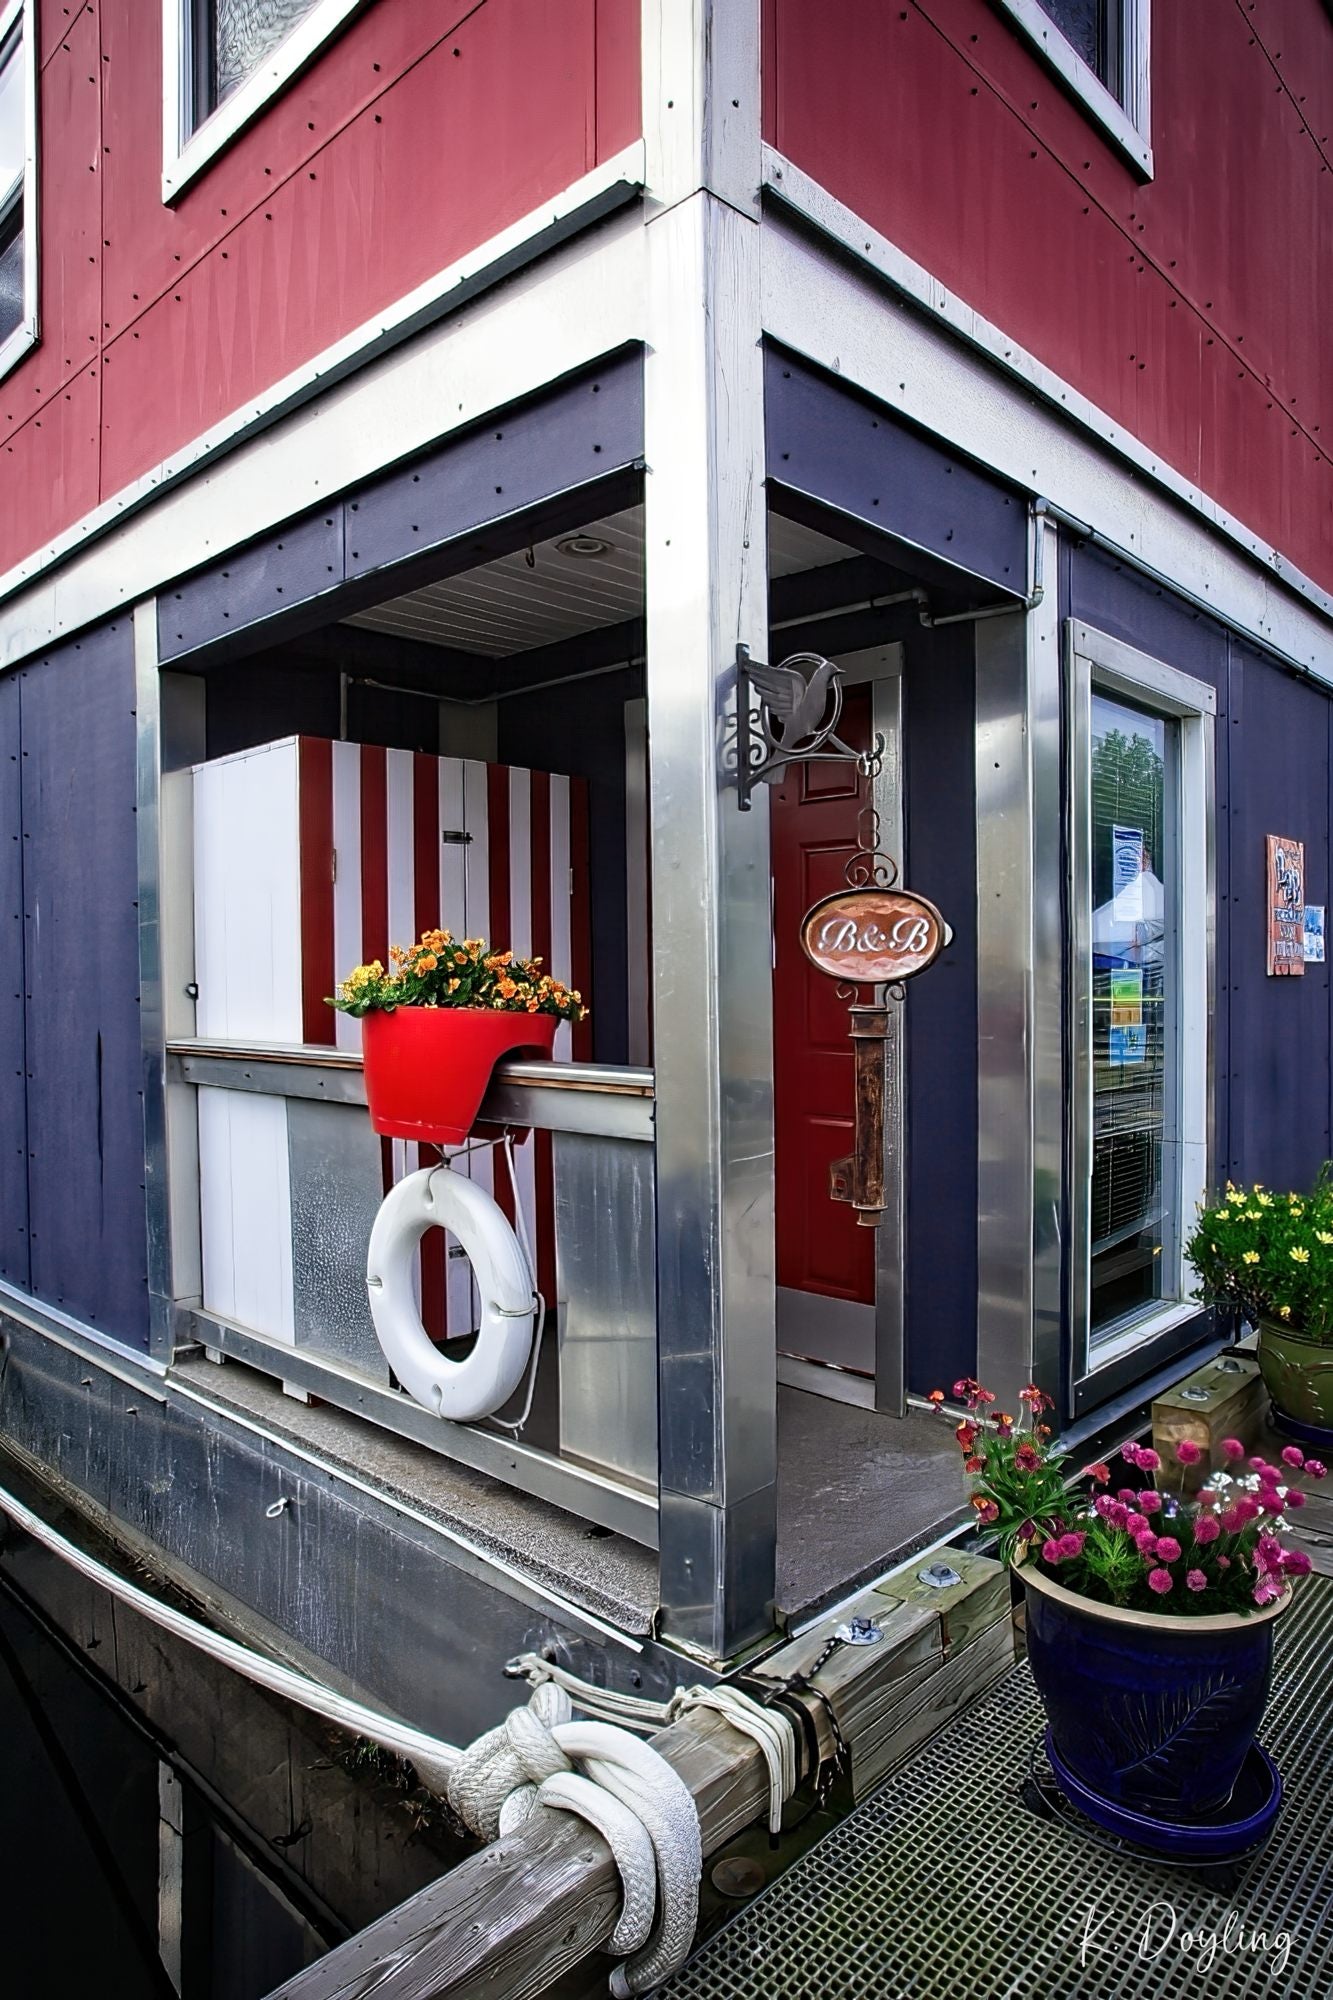 Sailors Inn - Victoria, BC